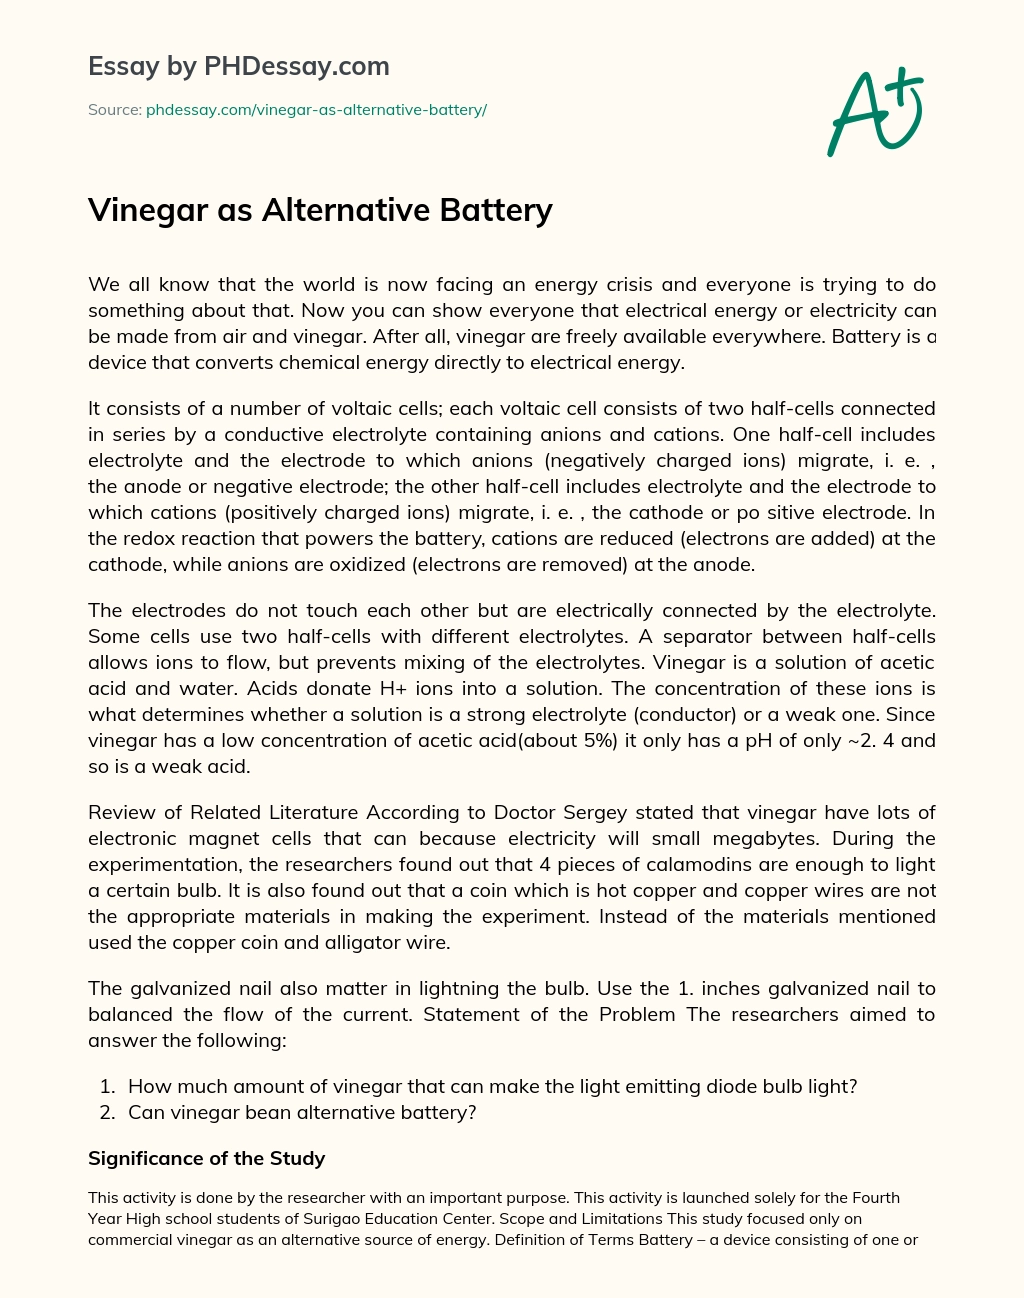 Vinegar as Alternative Battery essay